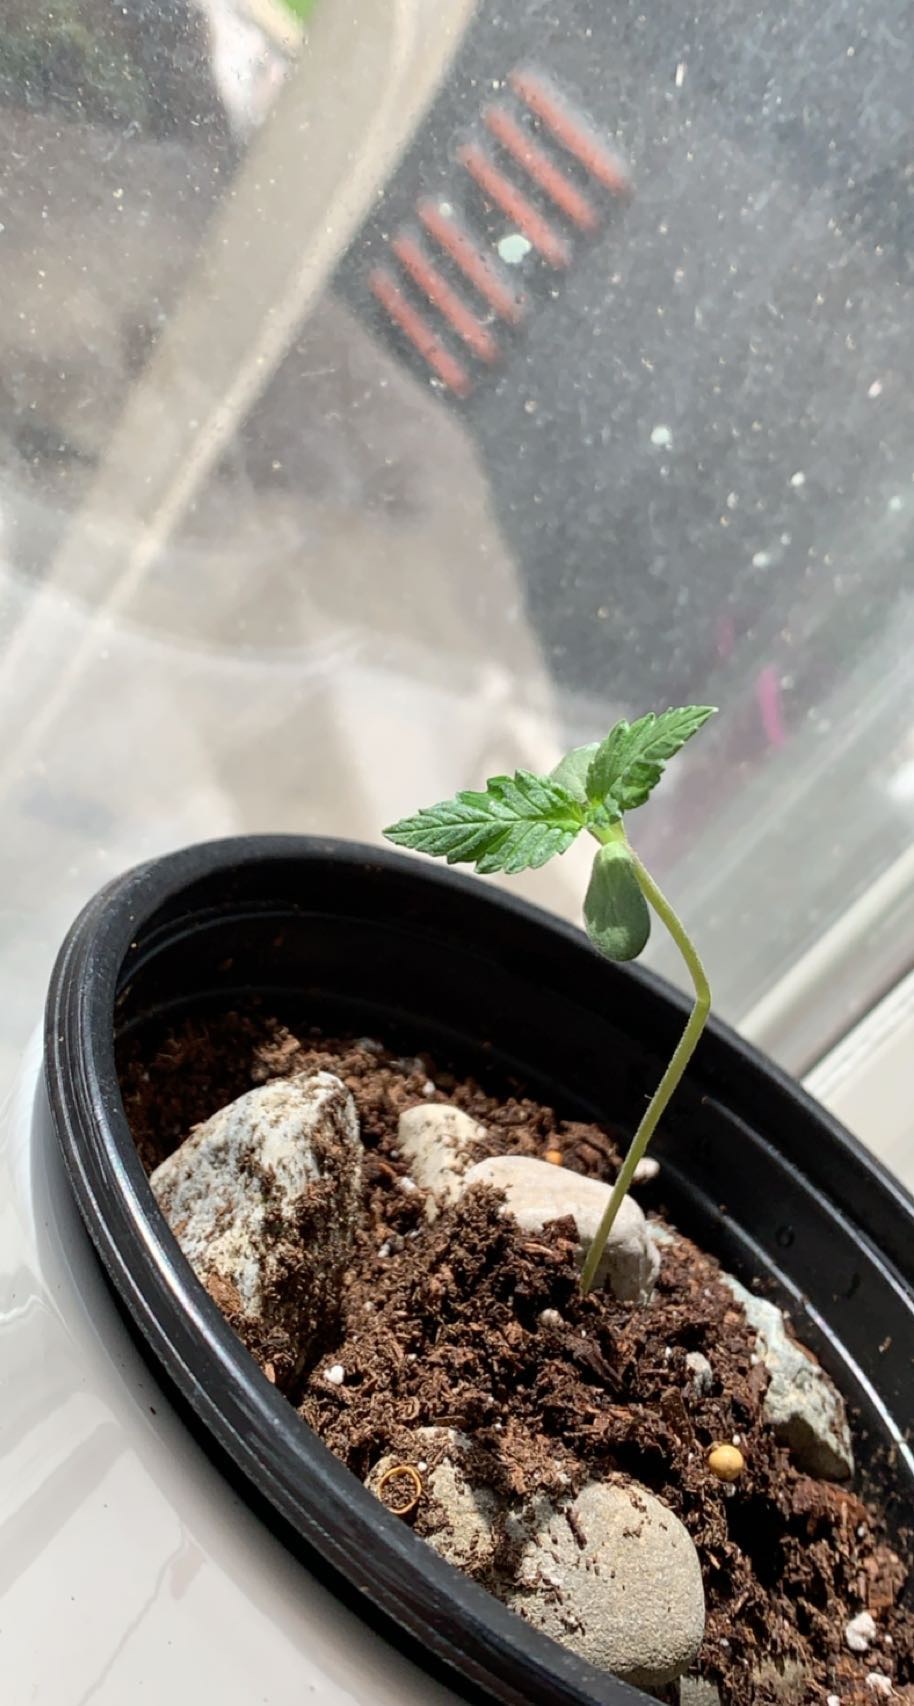 Bent 6 day old seedling stem